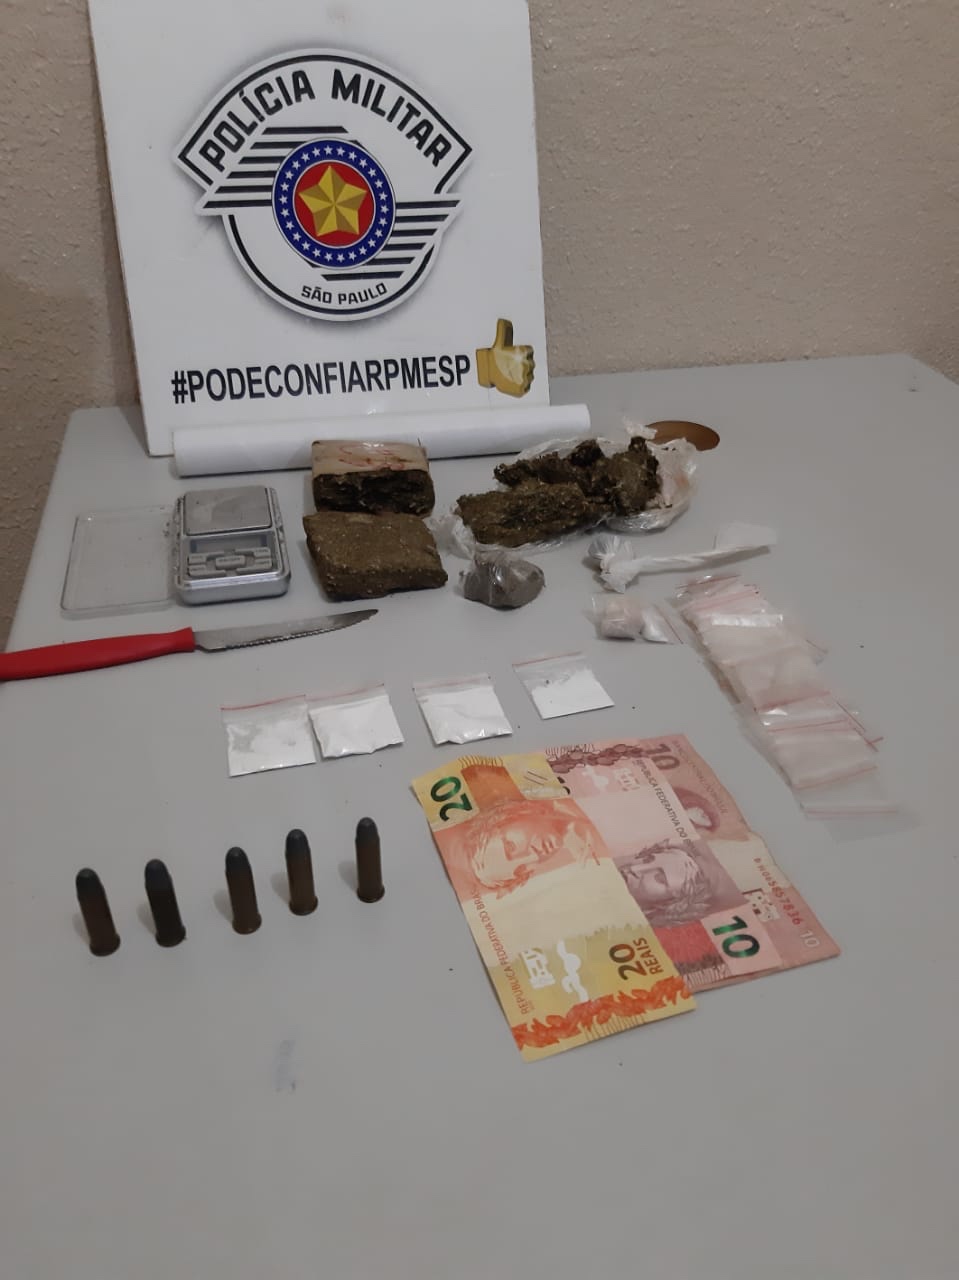 Policia Militar de Ourinhos prende homem com drogas e munição no Jd. Itamaraty